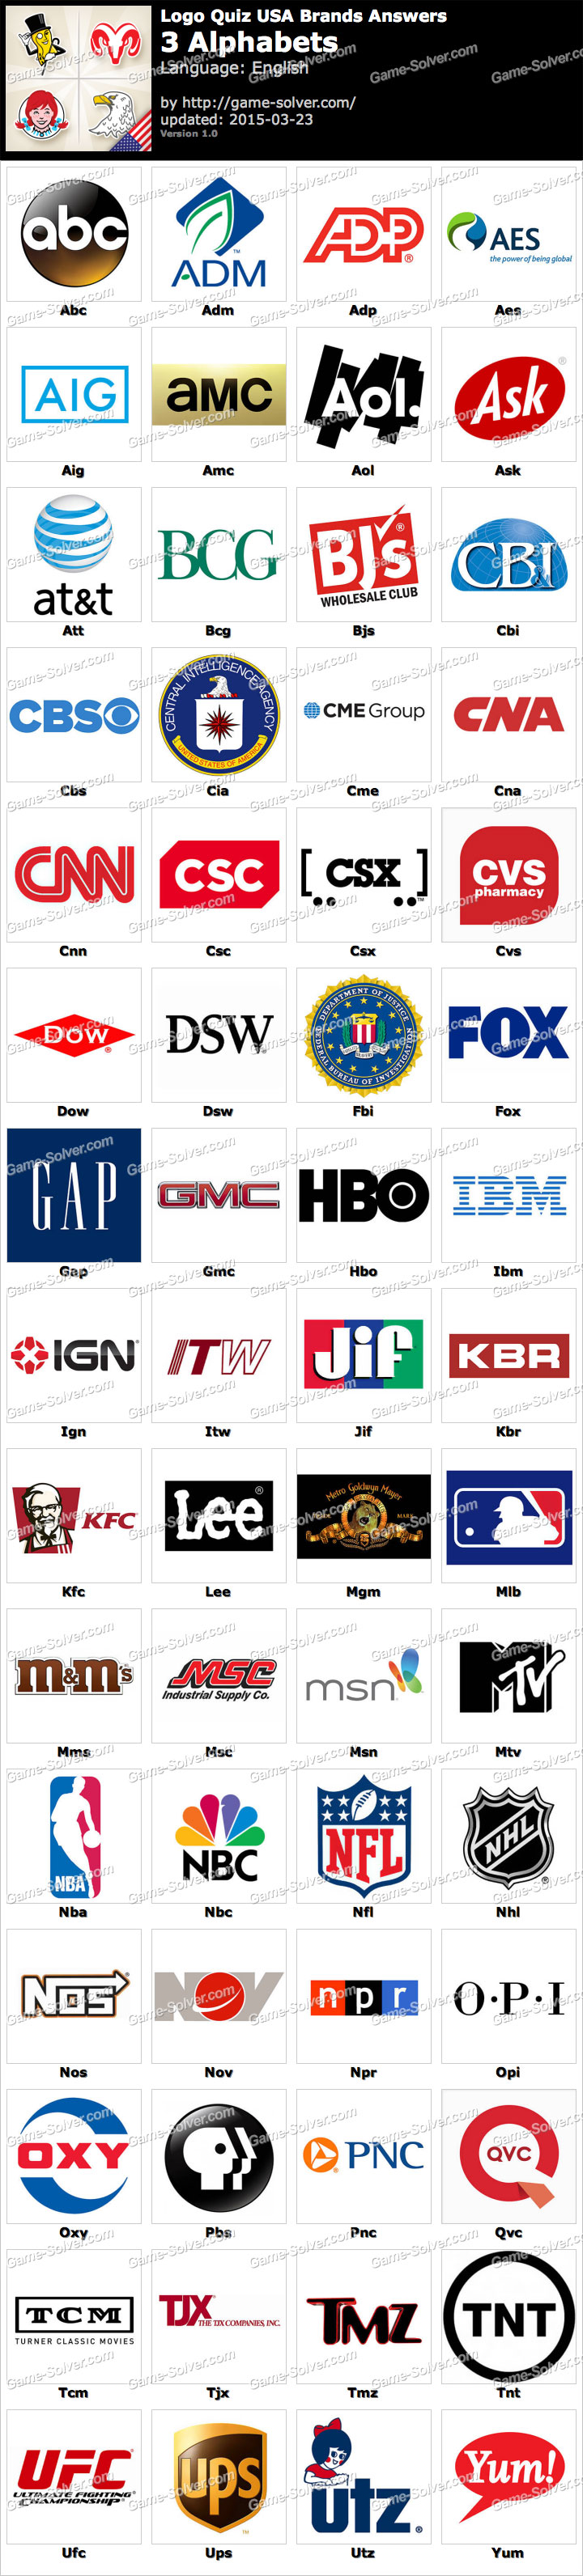 Logo Quiz USA Brands 3 Alphabets - Game Solver